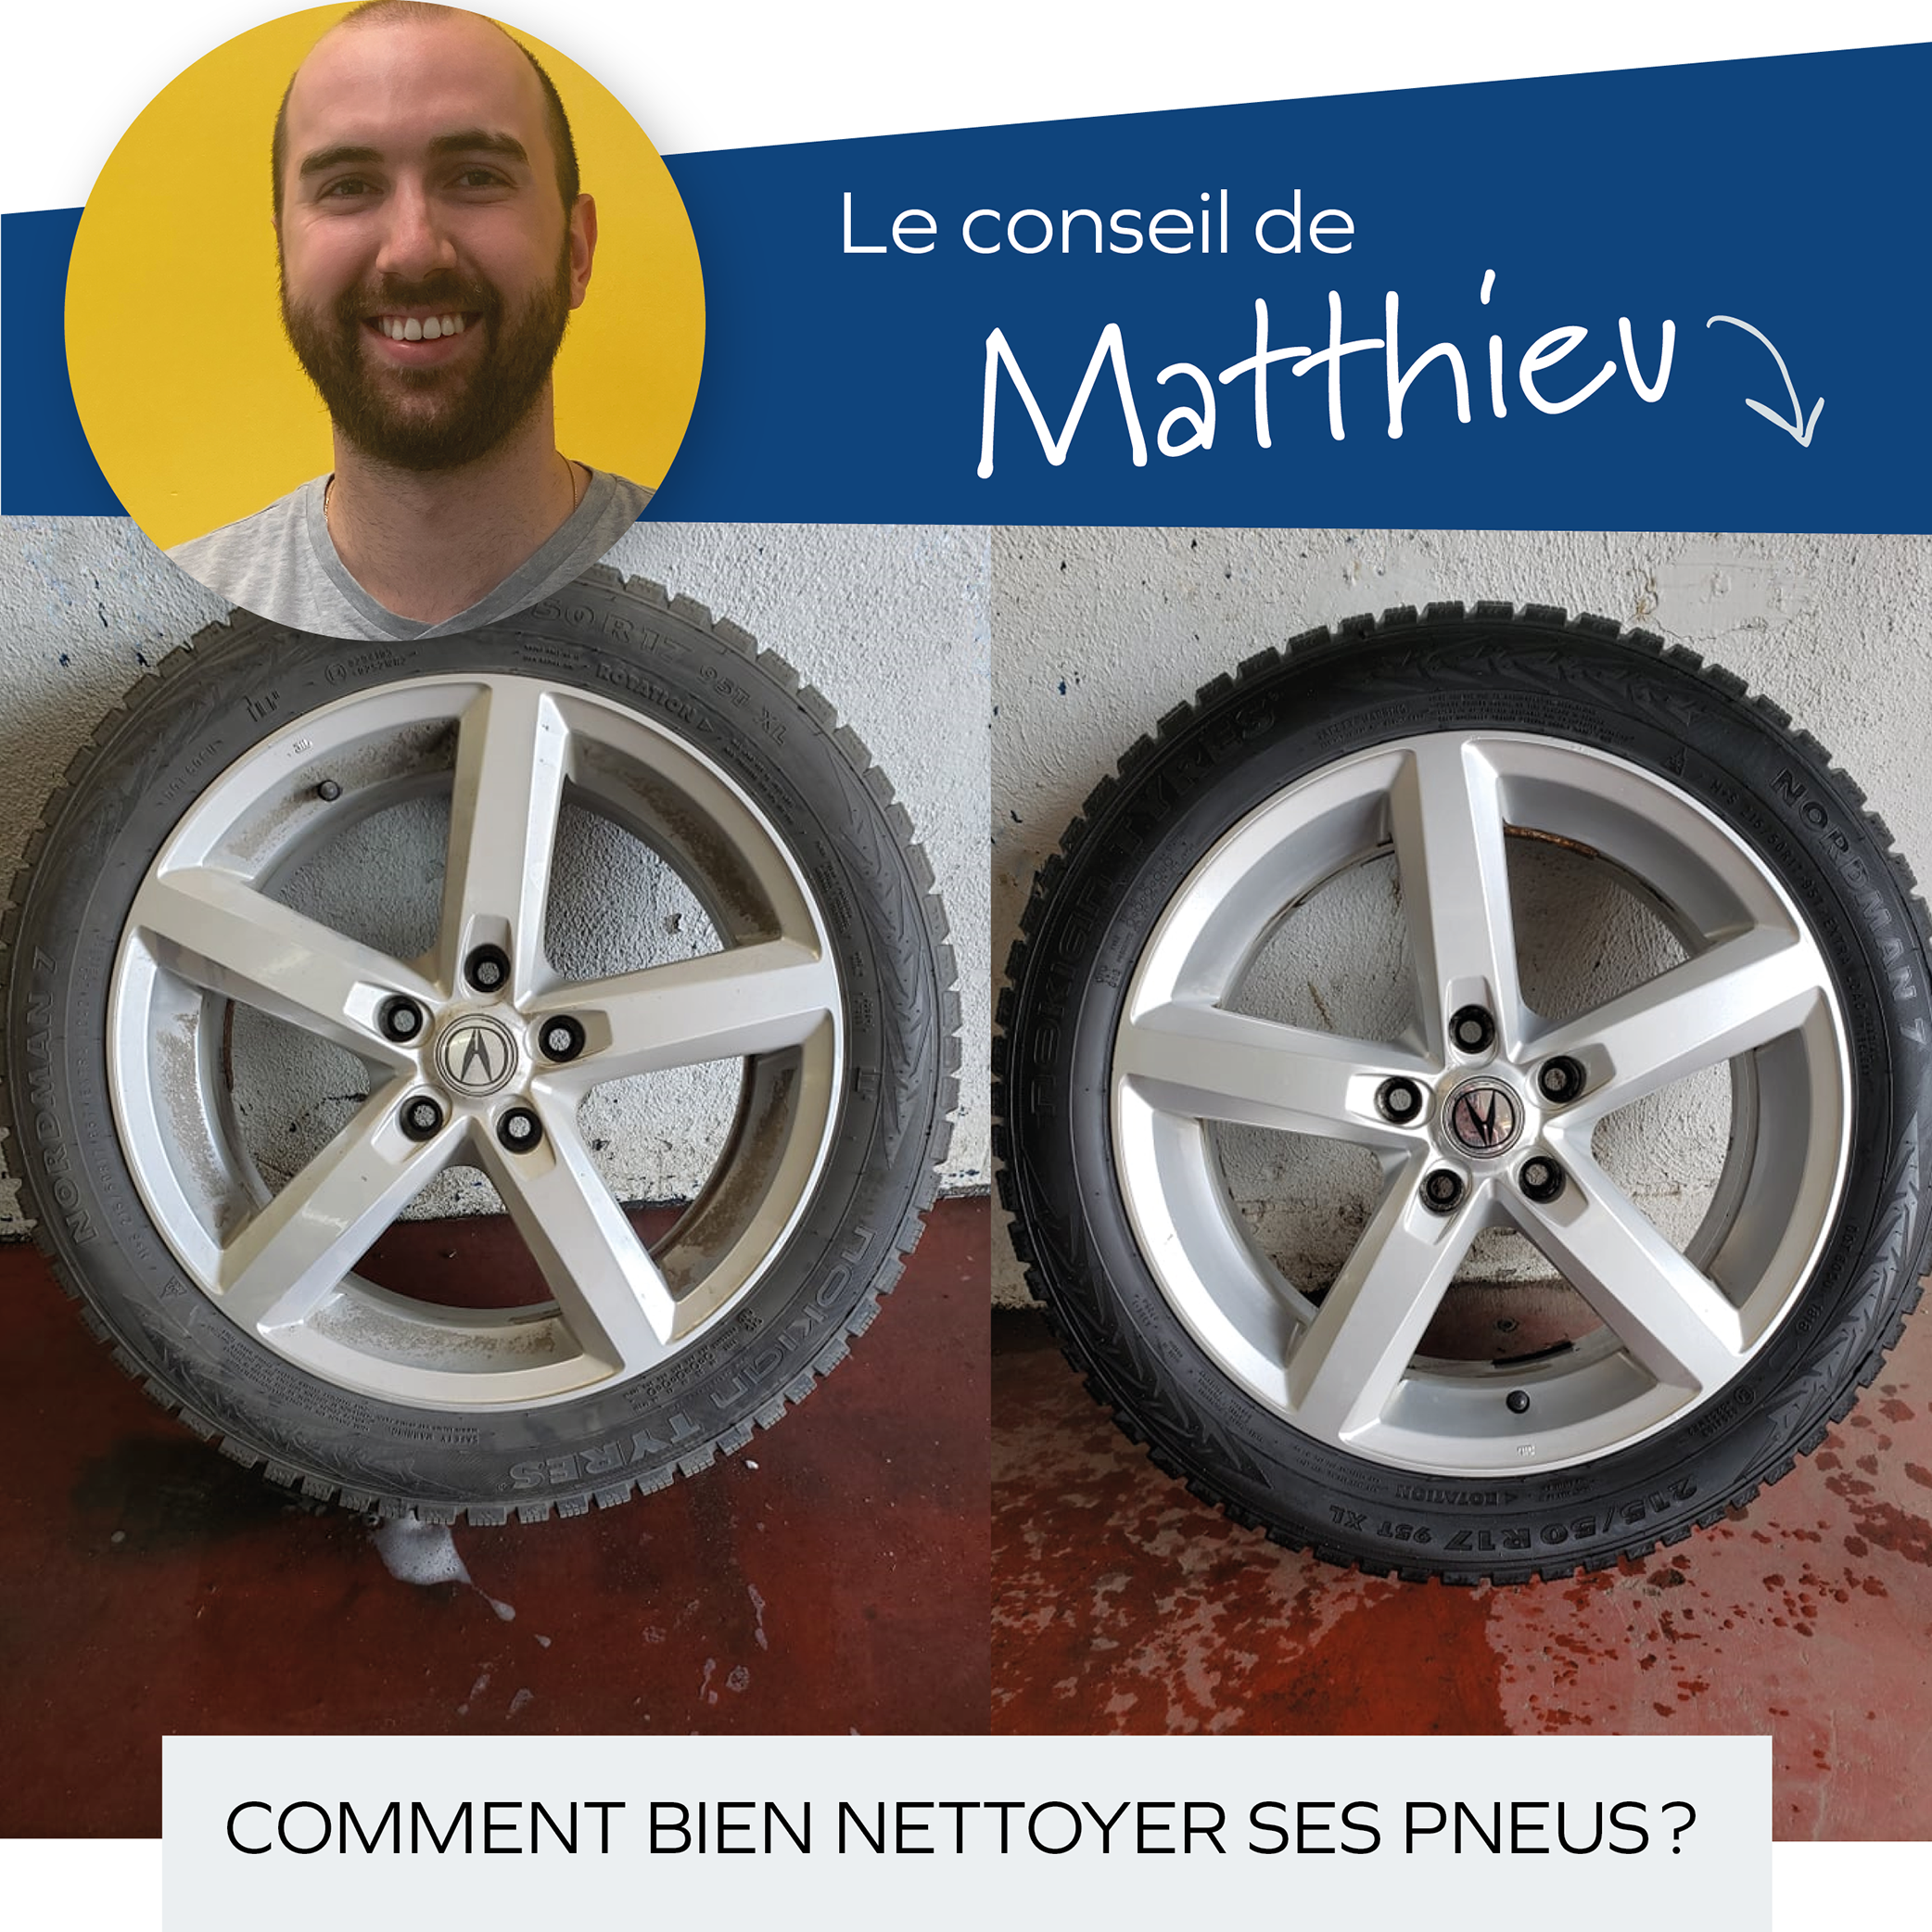 Le conseil de Matthieu - Comment bien nettoyer ses pneus?